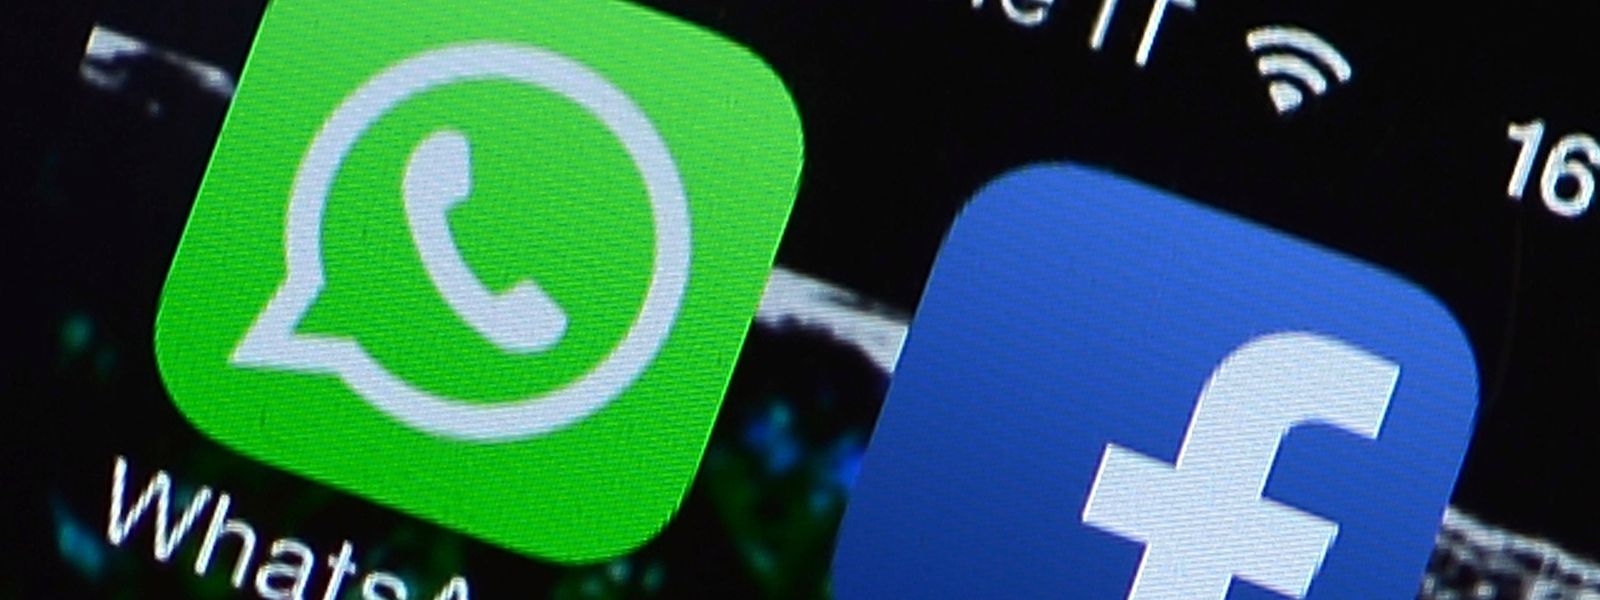 Die Nutzungsregelungen für Whatsapp sehen vor, dass die App Telefonnummern an Facebook für personalisierte Werbung weitergeben darf.